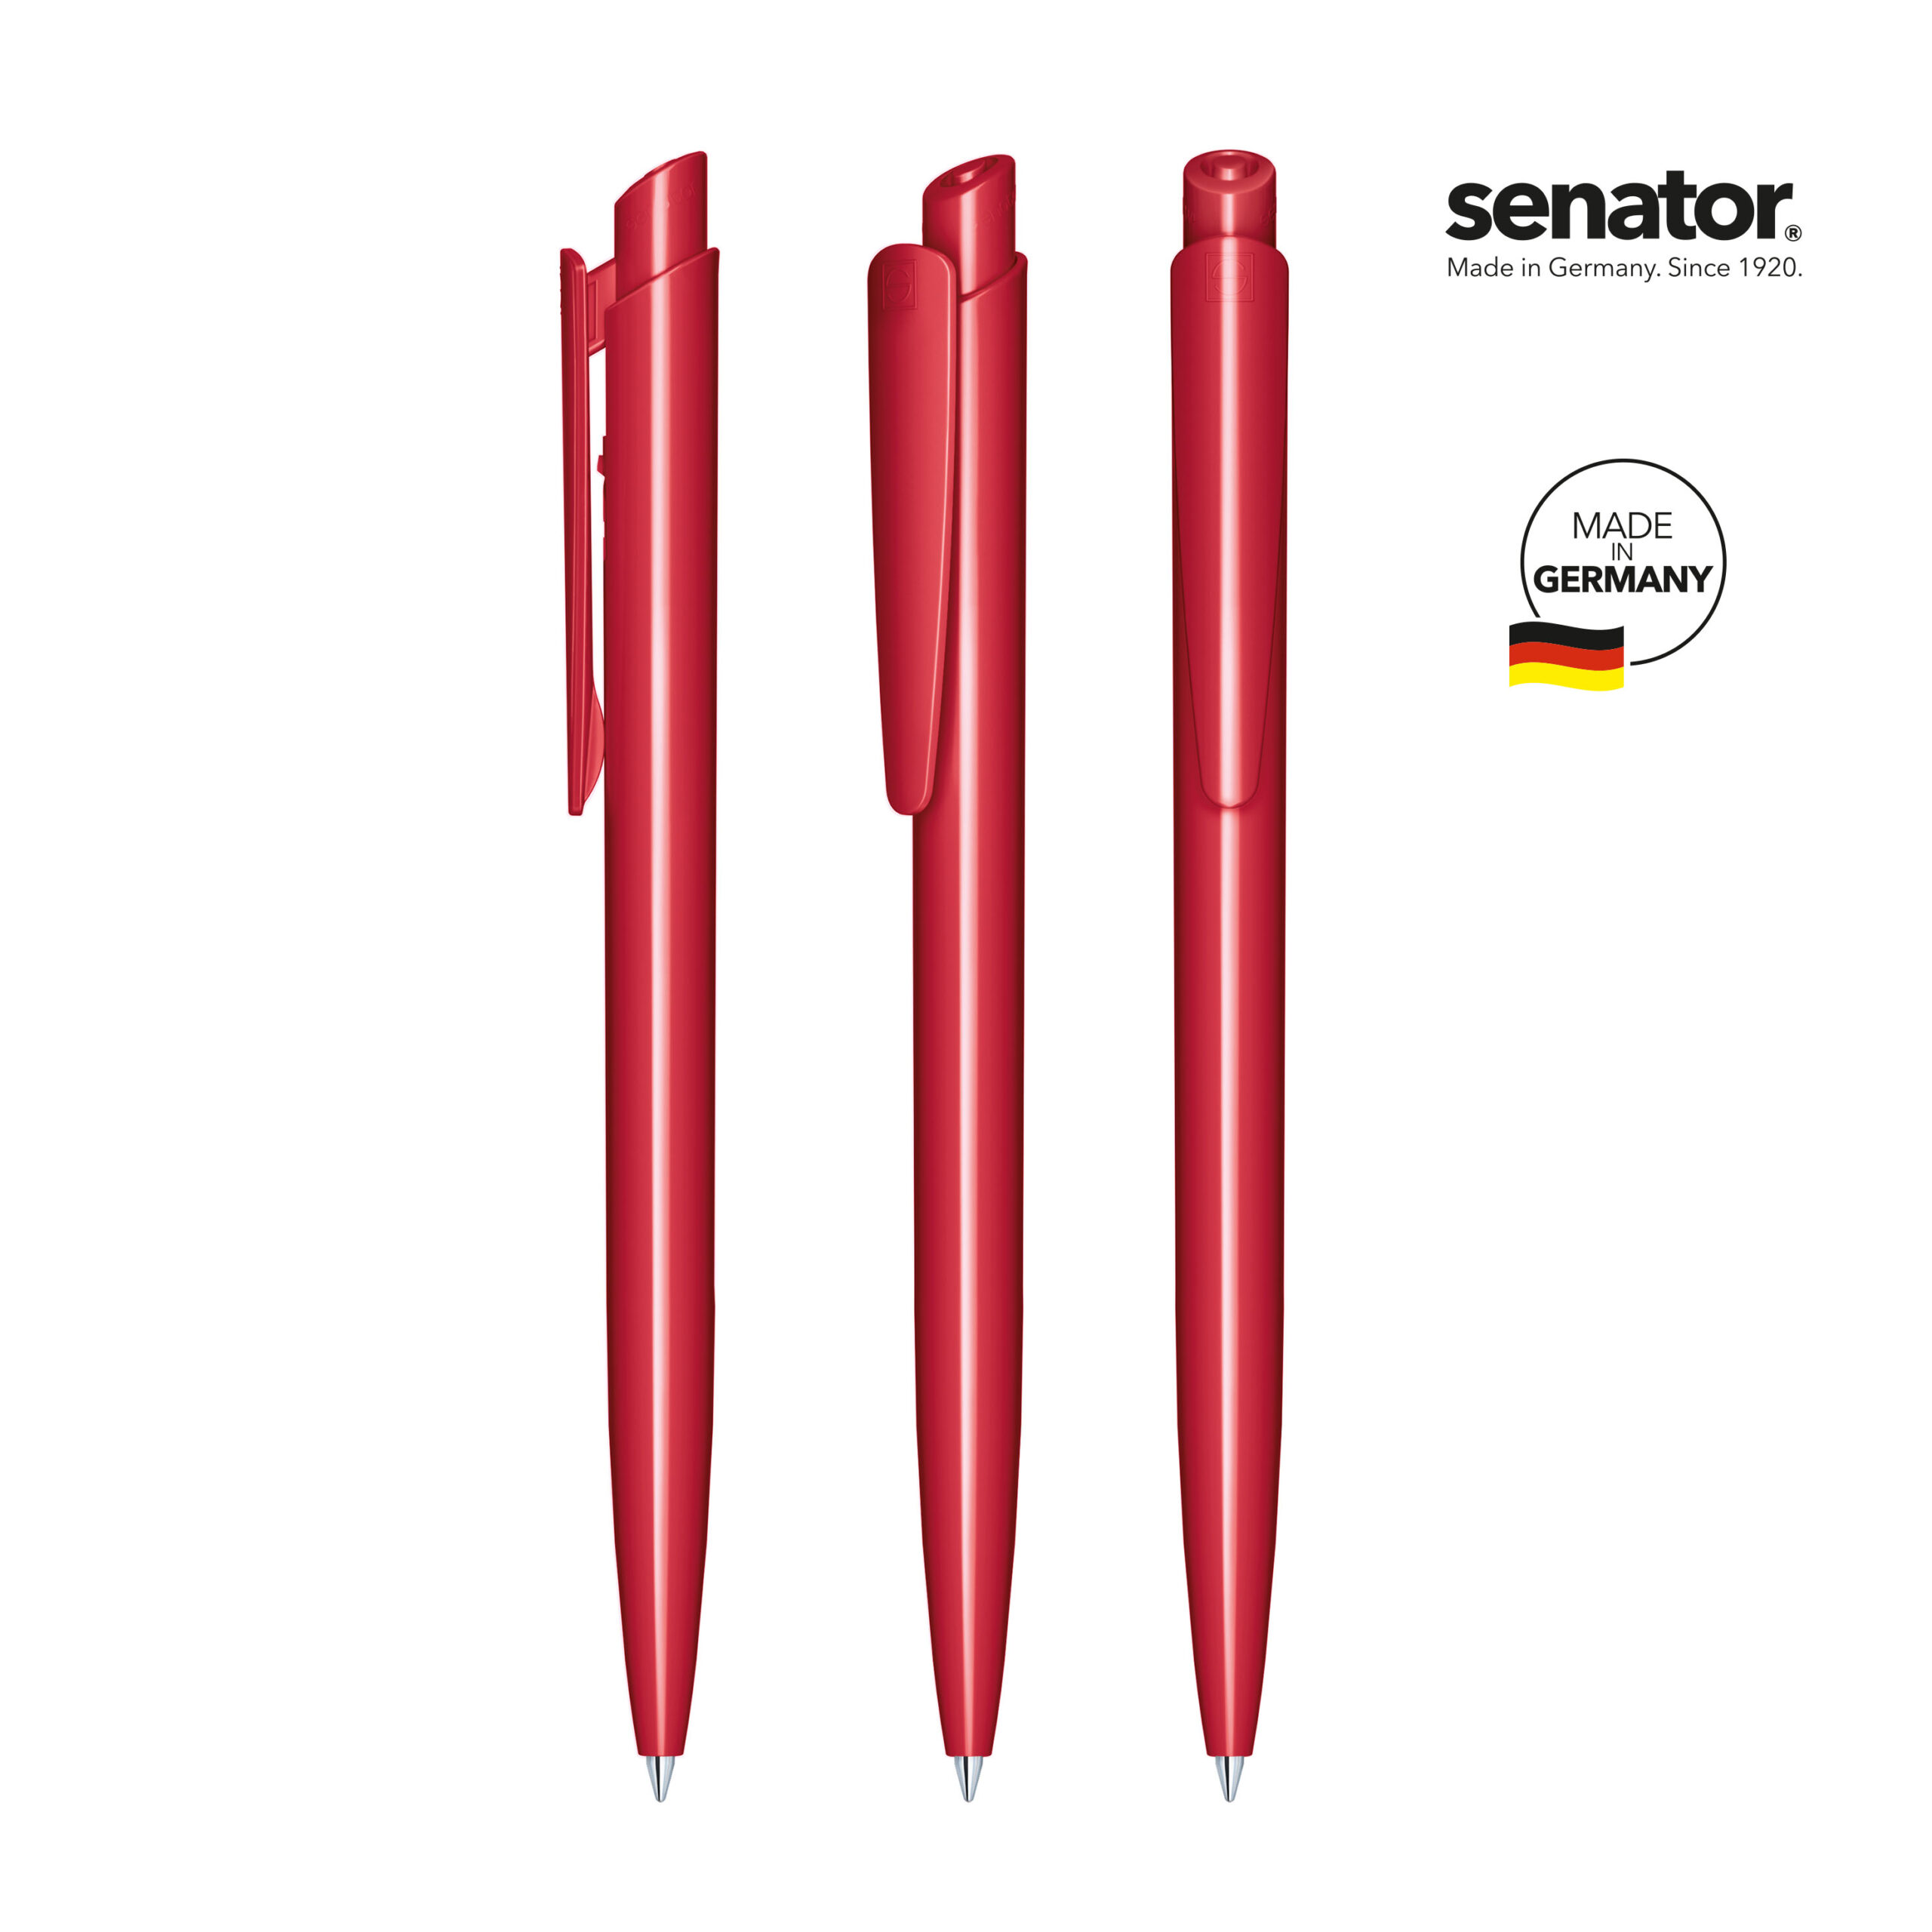 2600-senator-dart-polished-pms-201-5-p